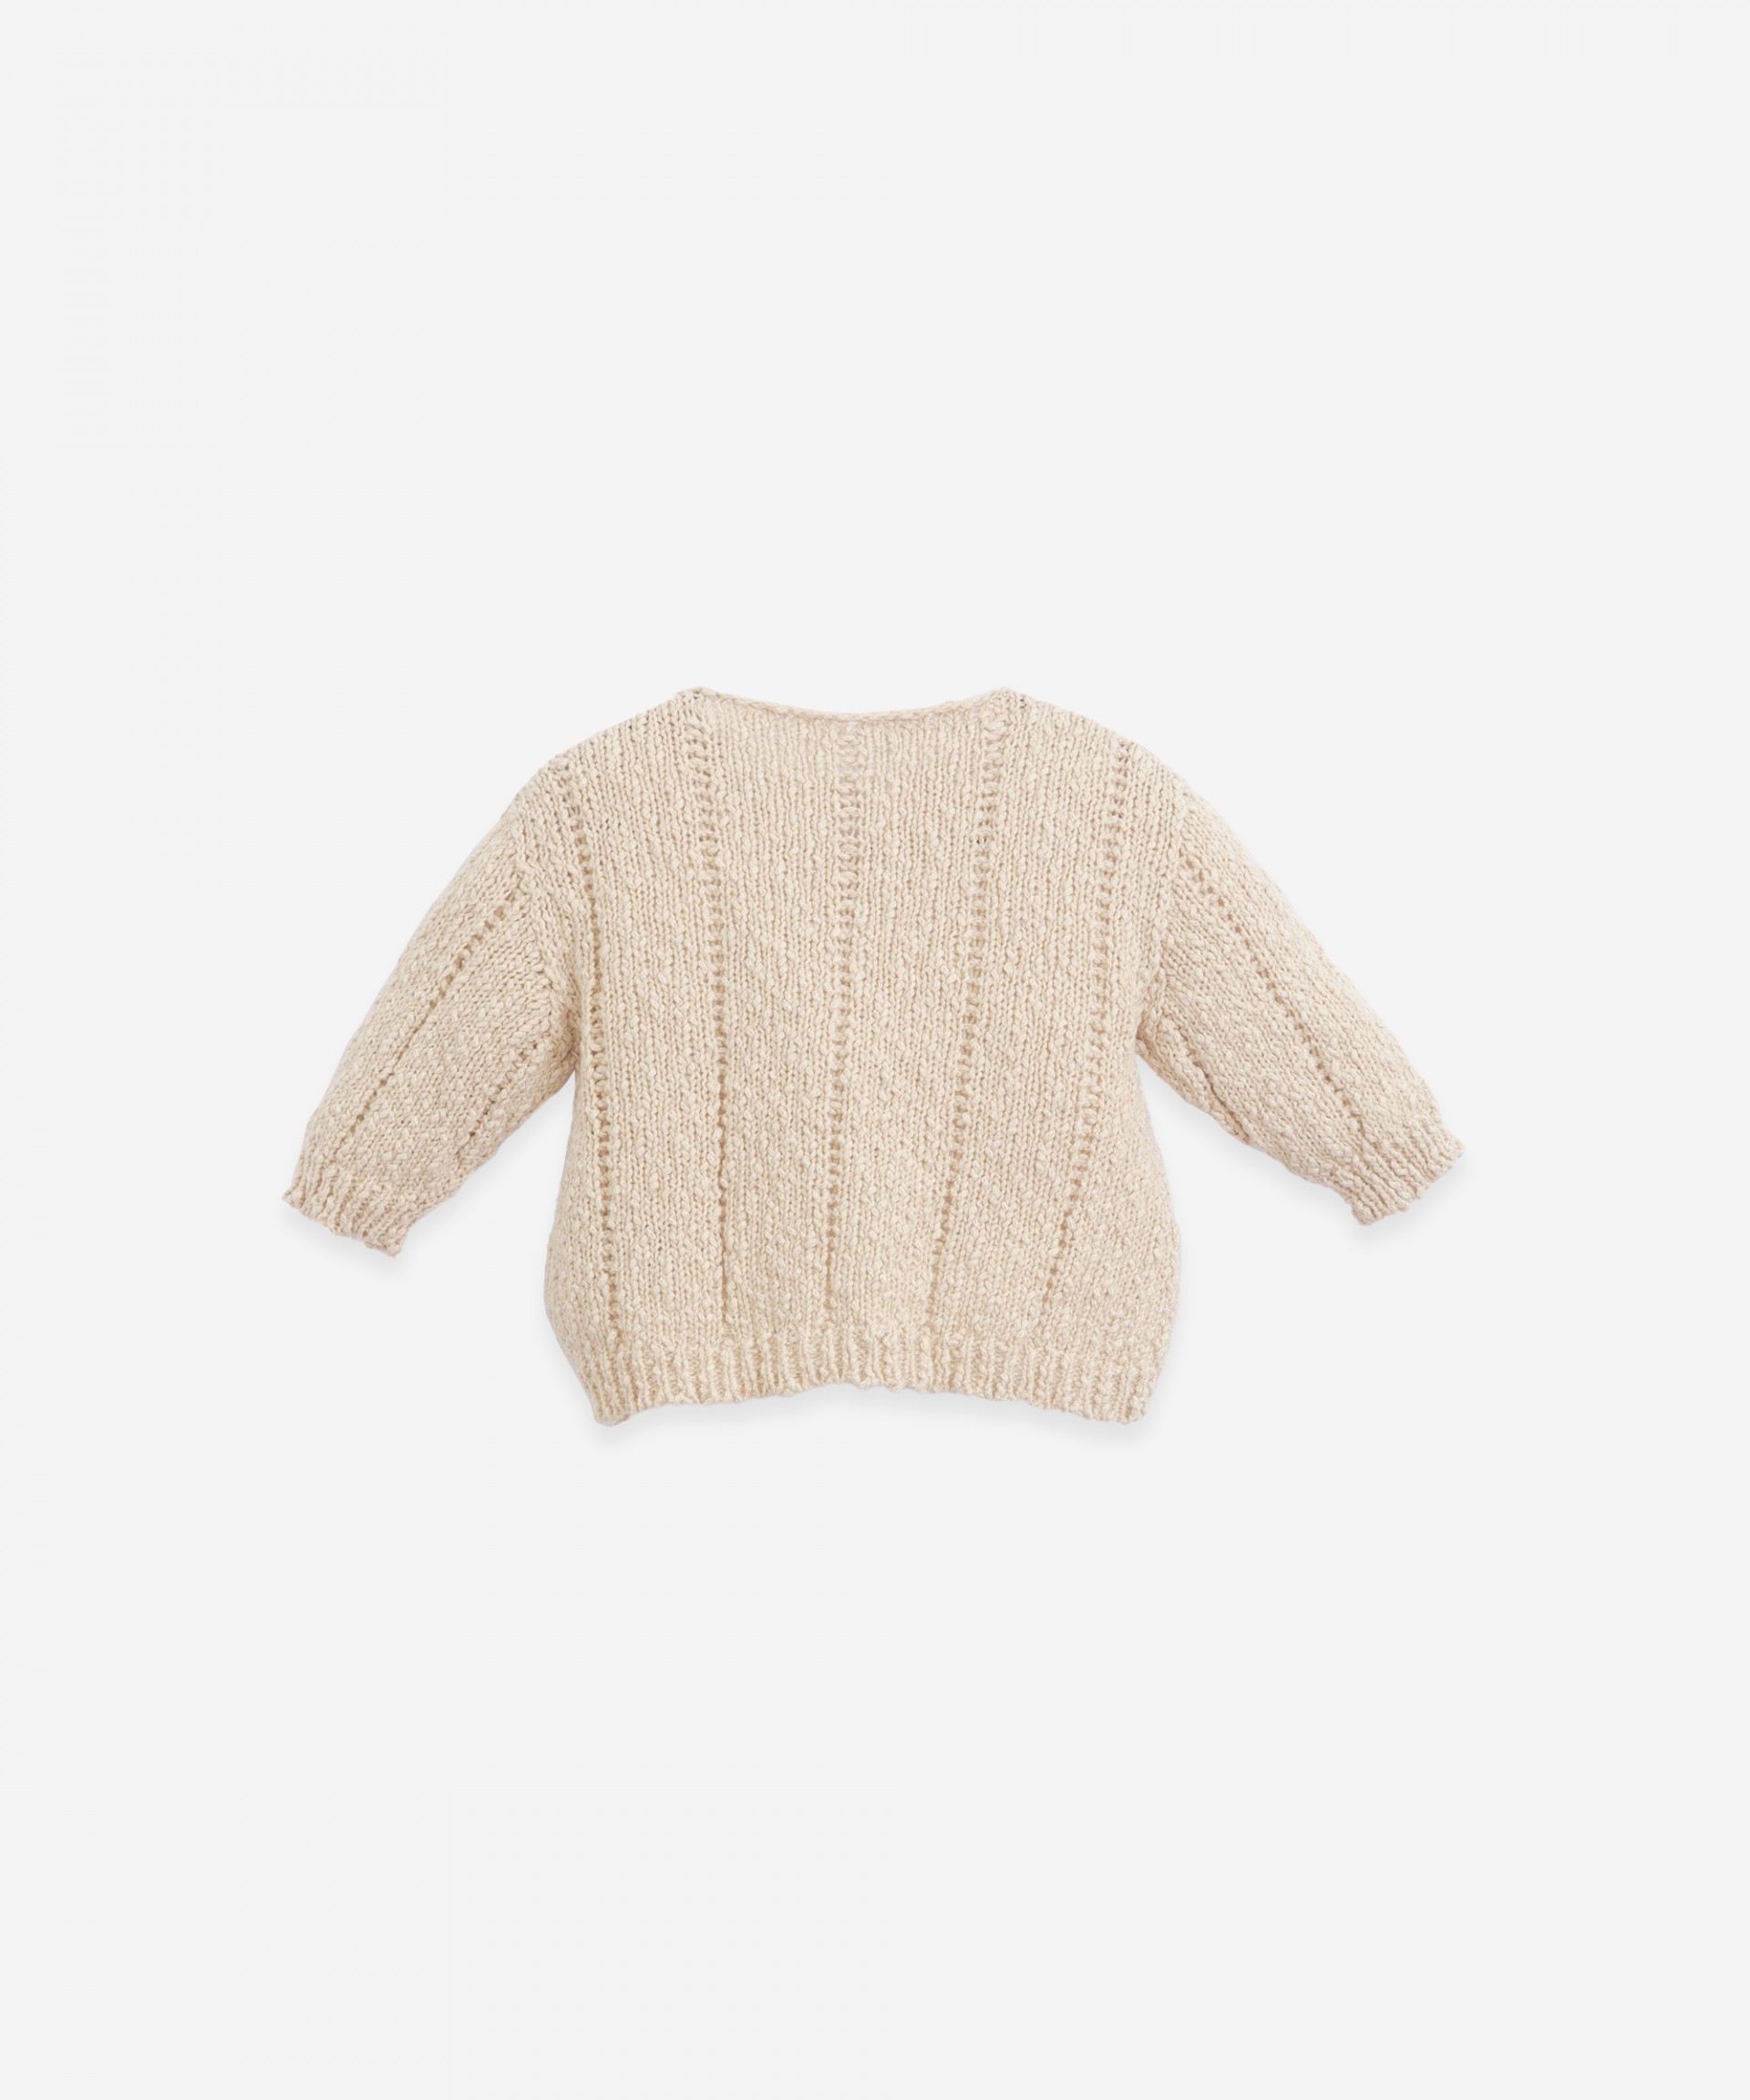 Jersey tricot de algodón y lino | Botany